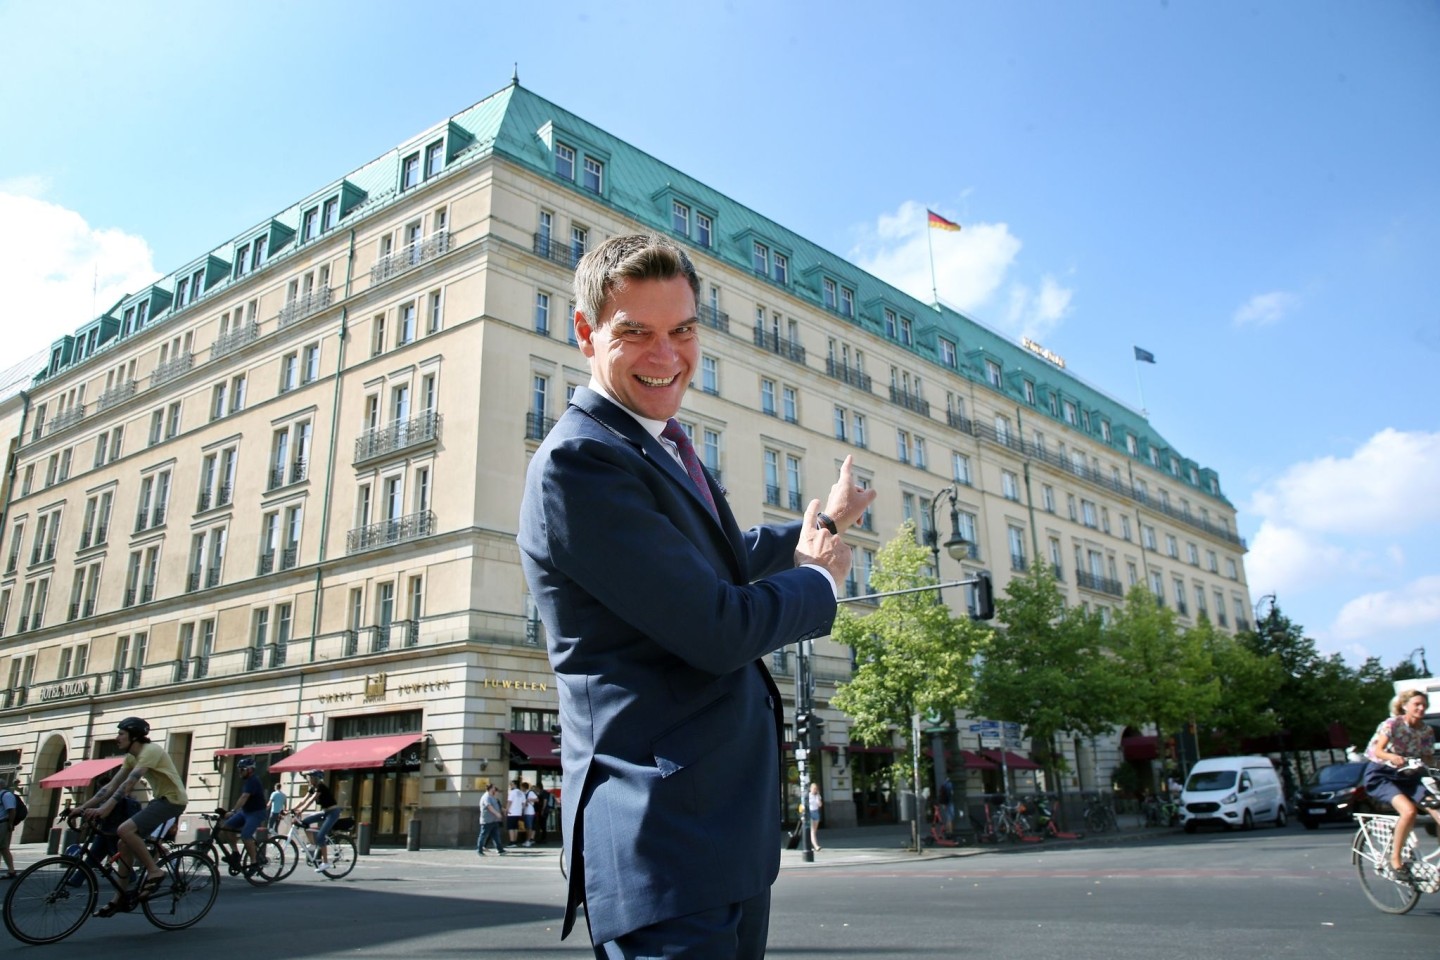 Hotel-Direktor Michael Sorgenfrey vor dem Luxushotel am Pariser Platz in Berlin.